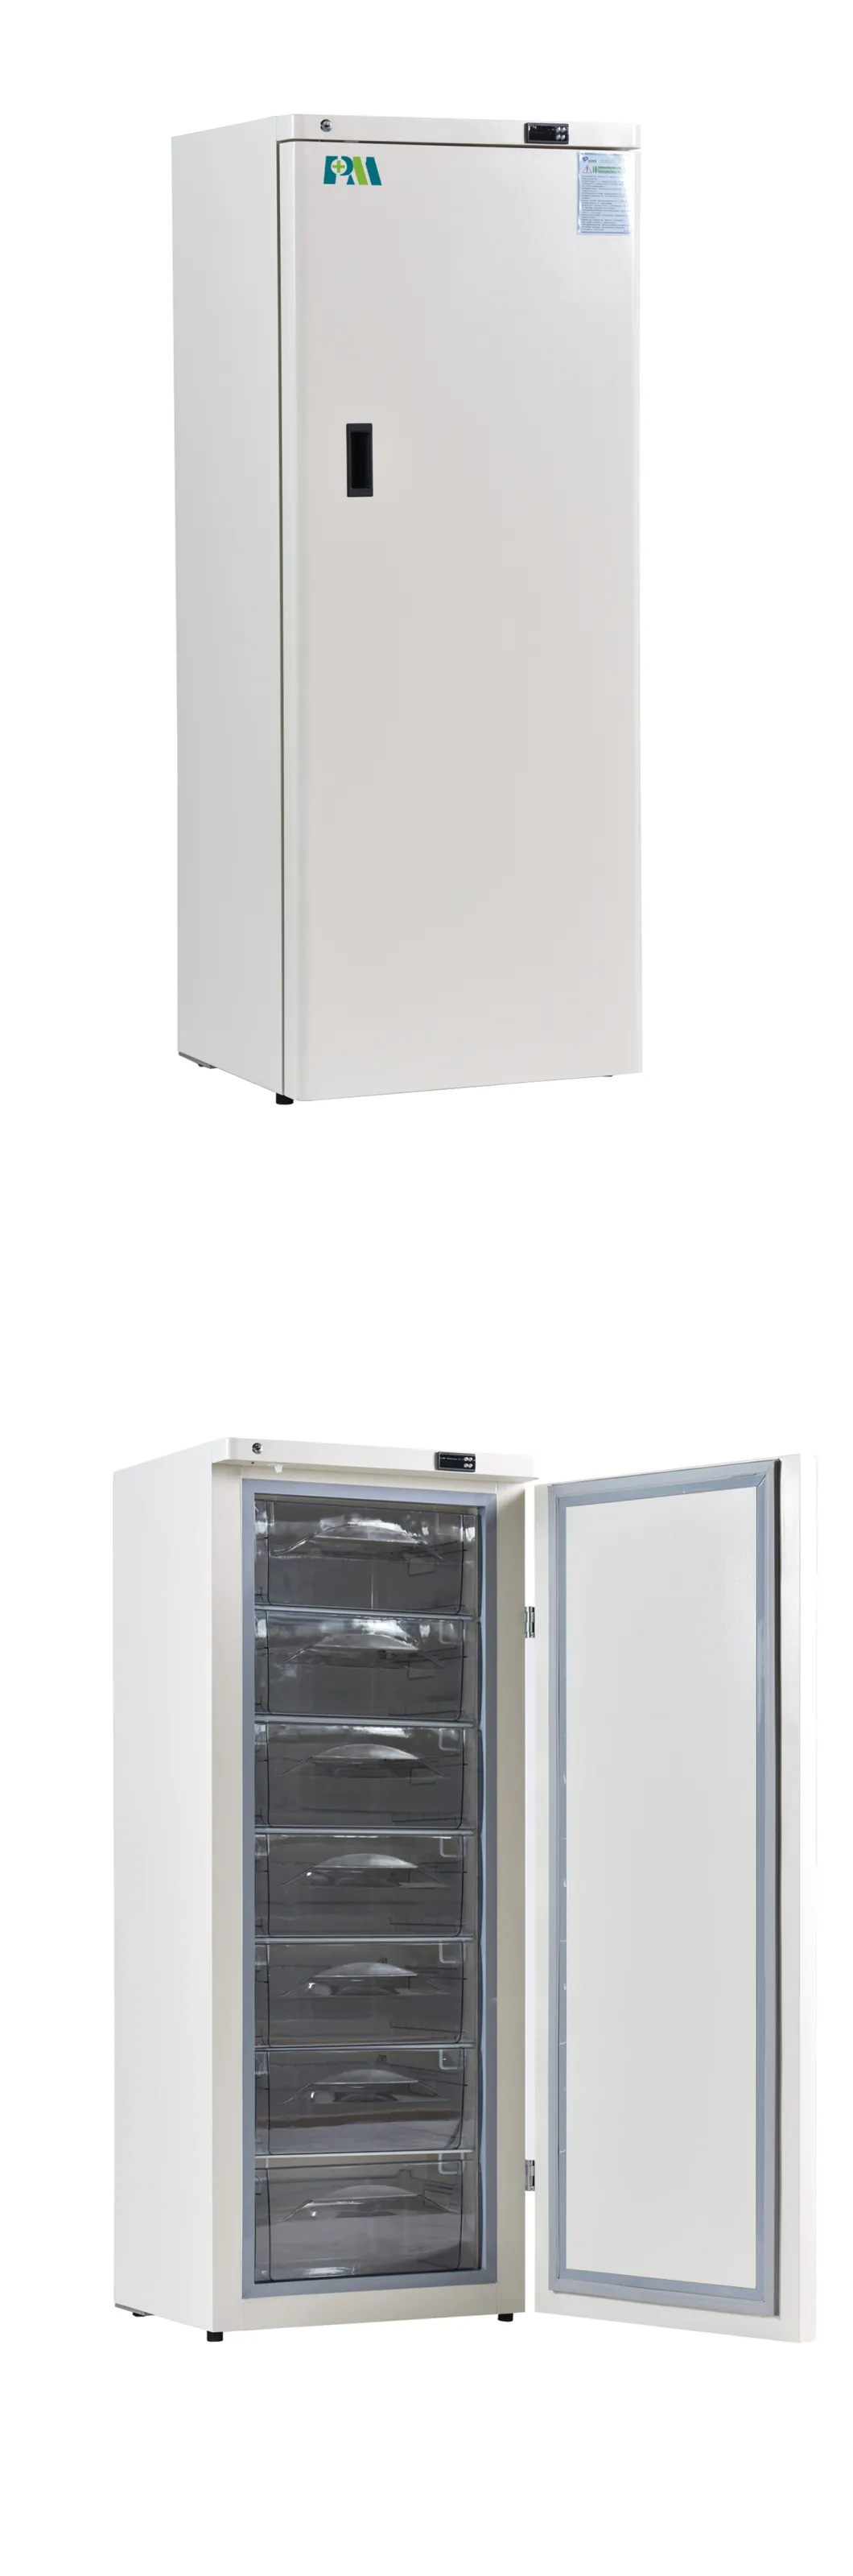 Энергосберегающие -40 градусов вертикально 278 литров медицинского морозильника с Multi ящиками